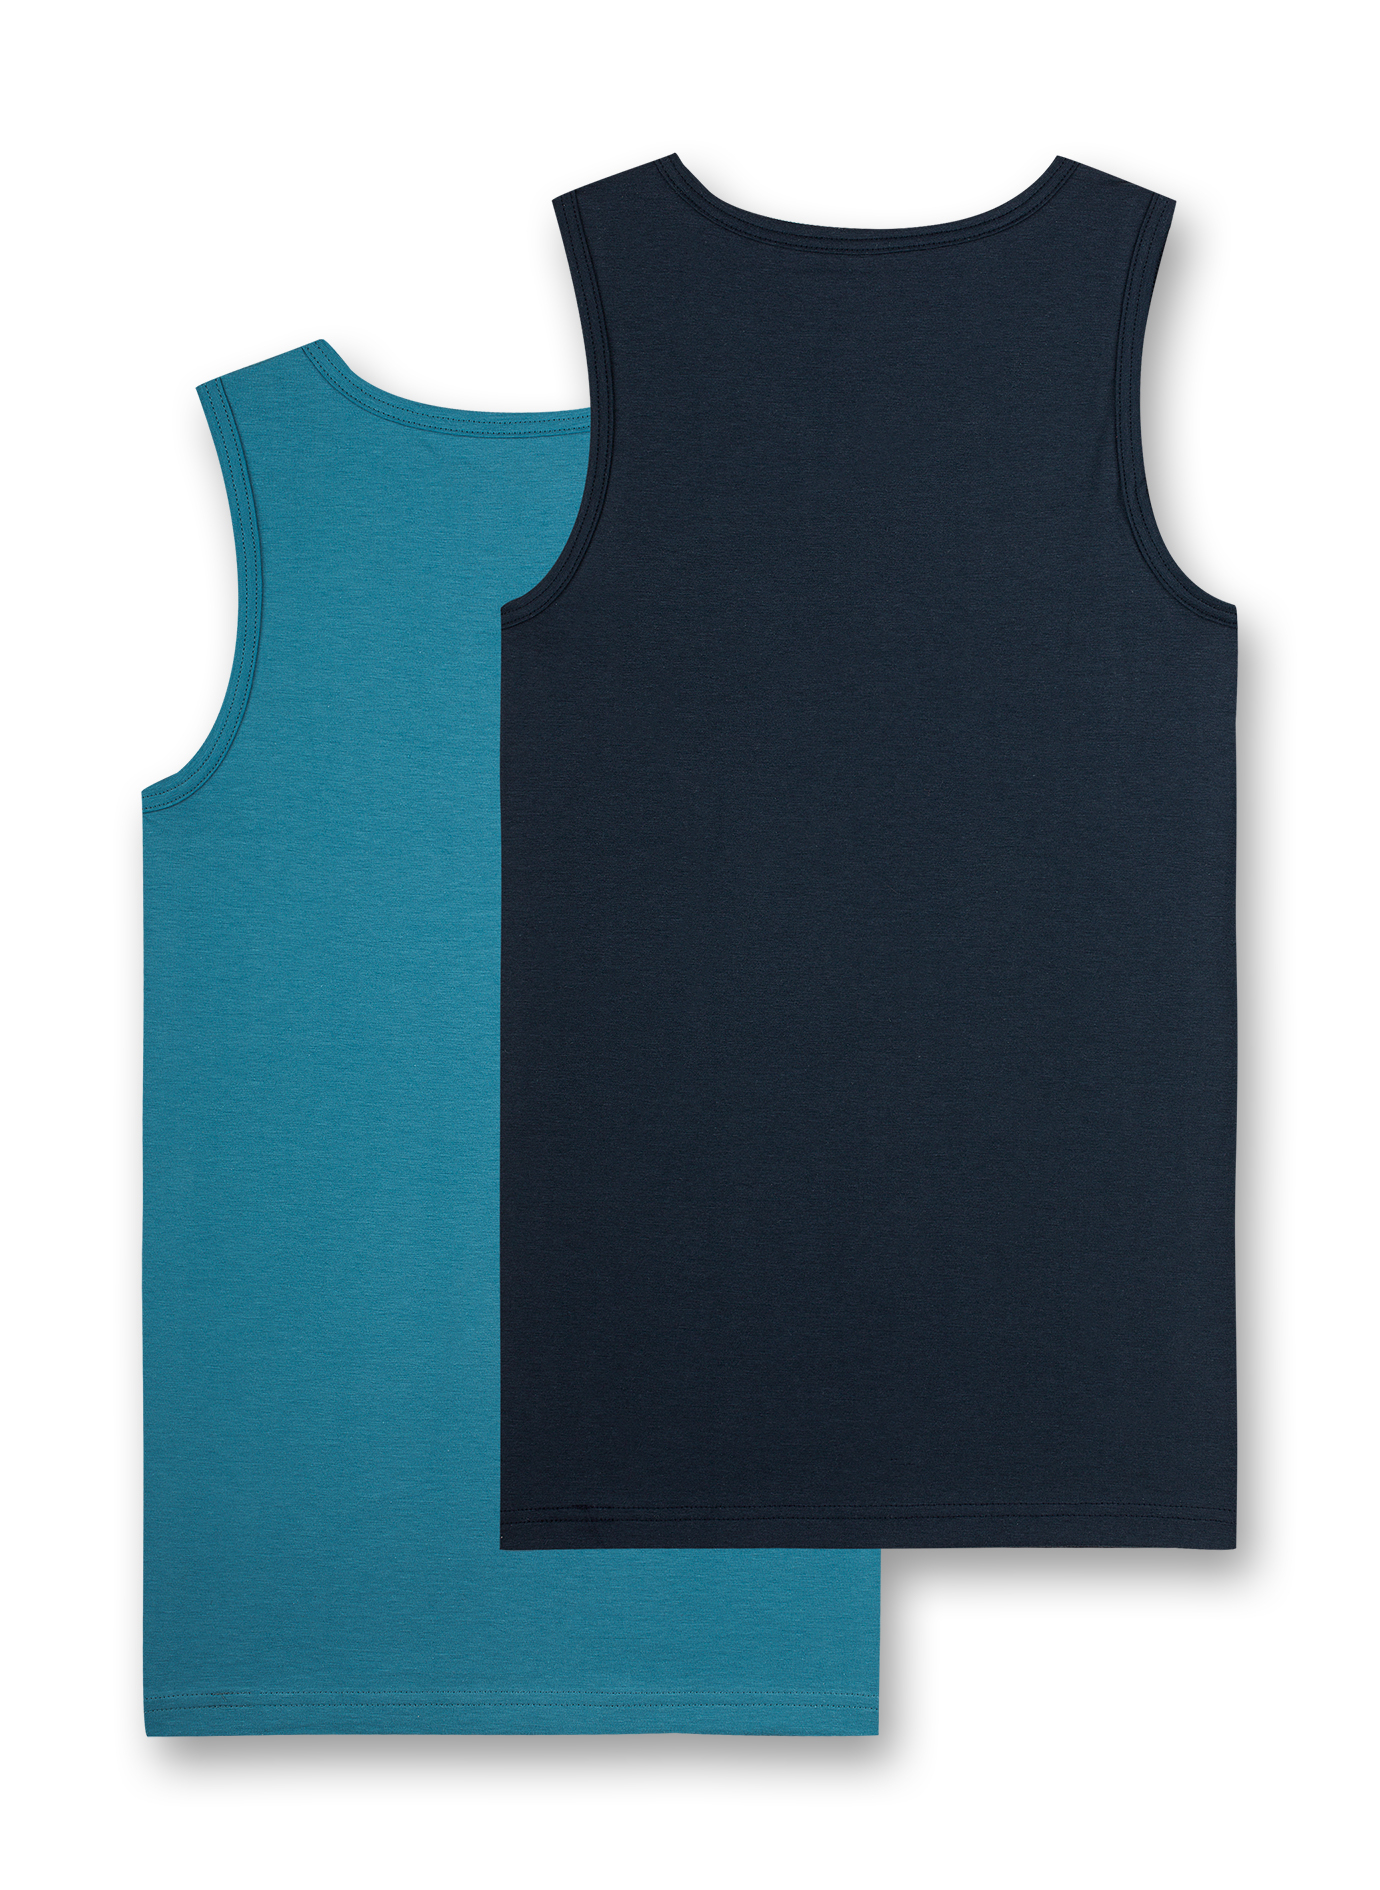 Jungen-Unterhemd (Doppelpack) Blau und Dunkelblau